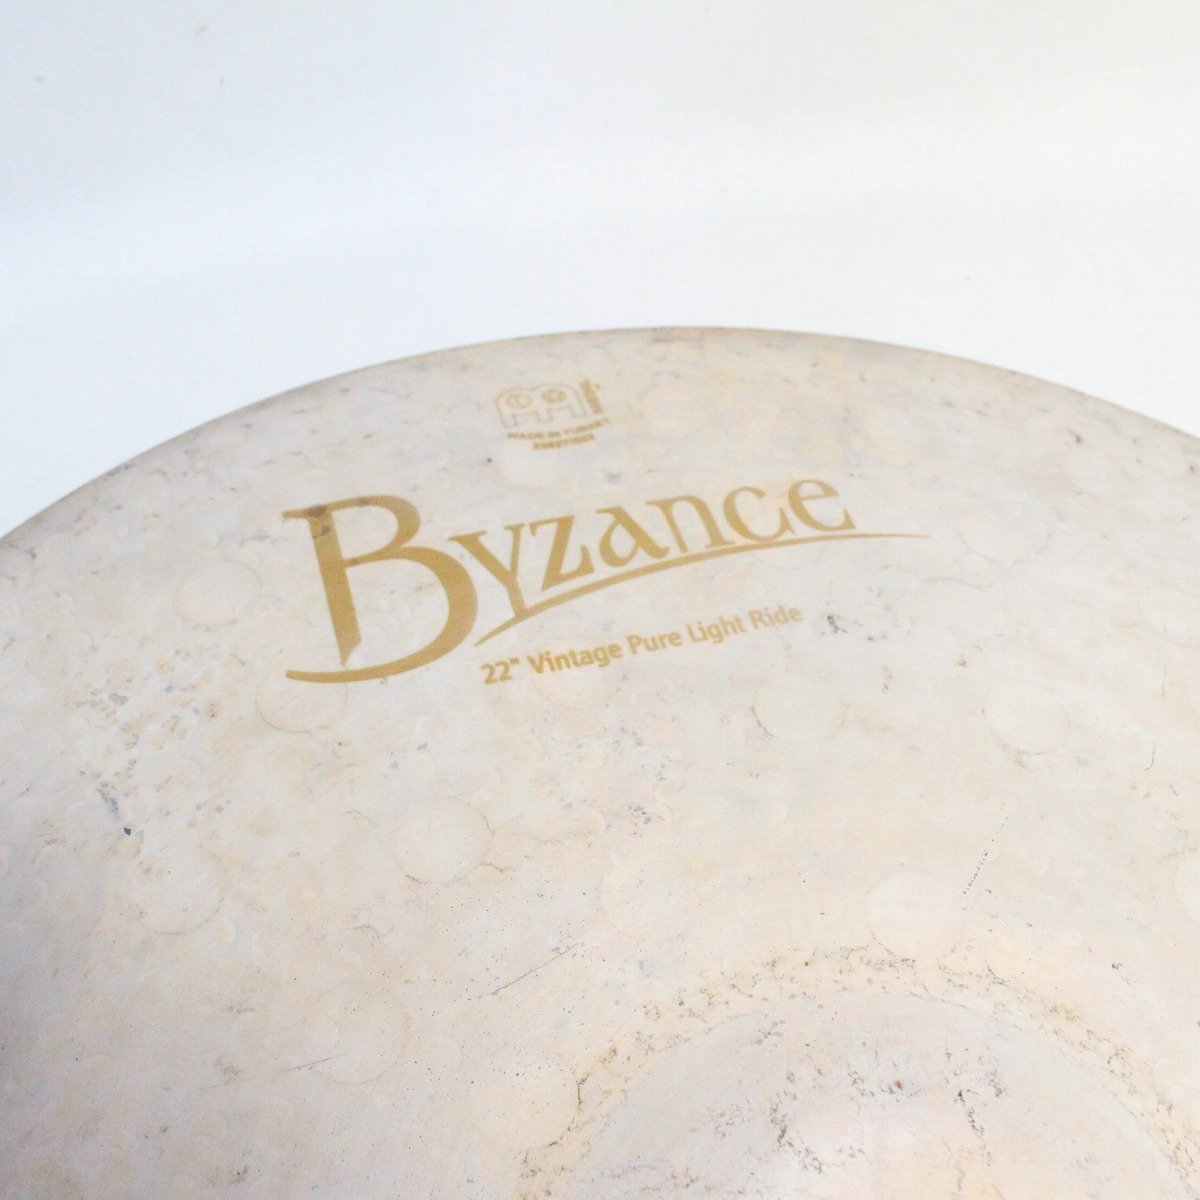 MEINL 22”Byzance Vintage Pure Light Ride打楽器